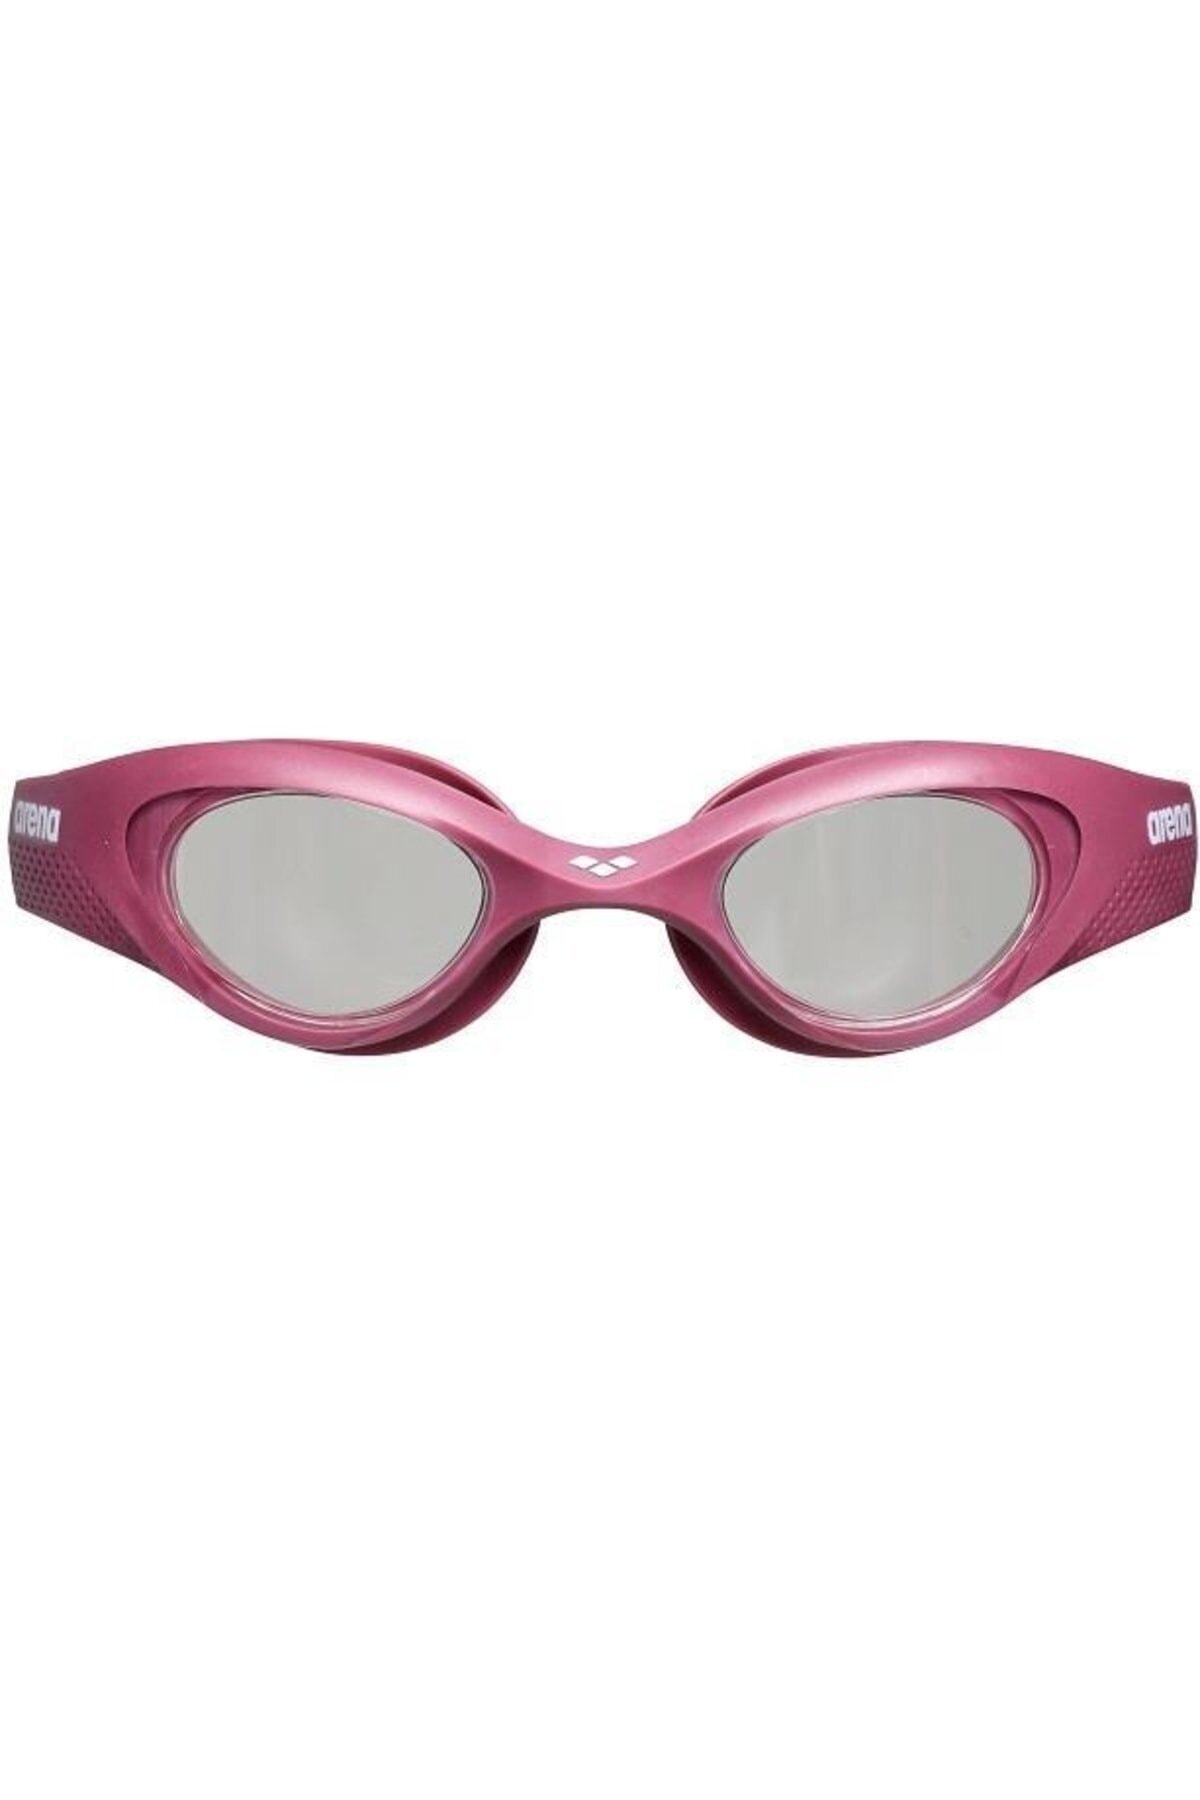 Arena عینک شنای تک زن قرمز یک